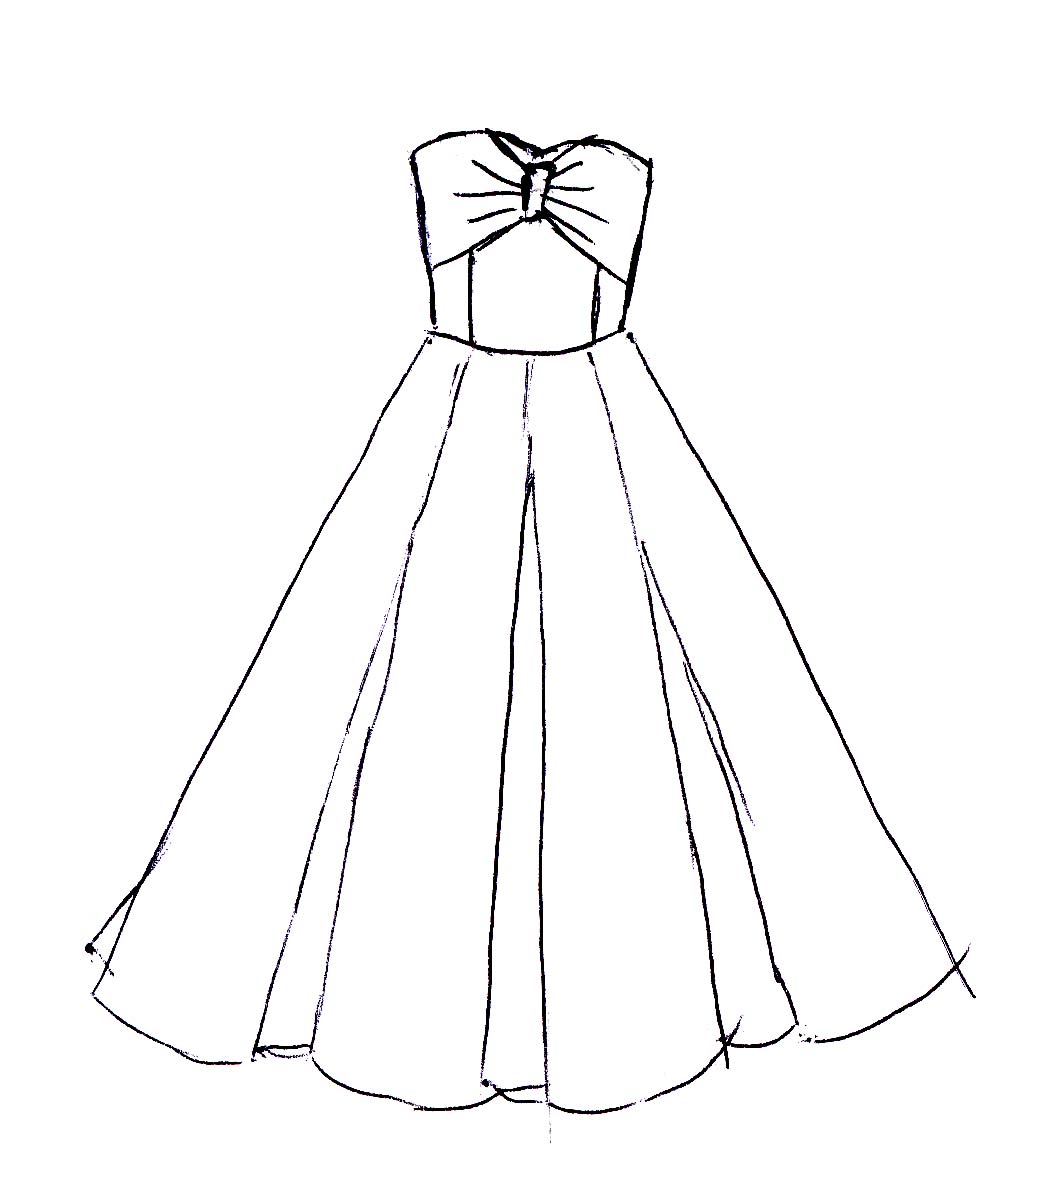 38+ Sketches Of Dresses Pics basnami